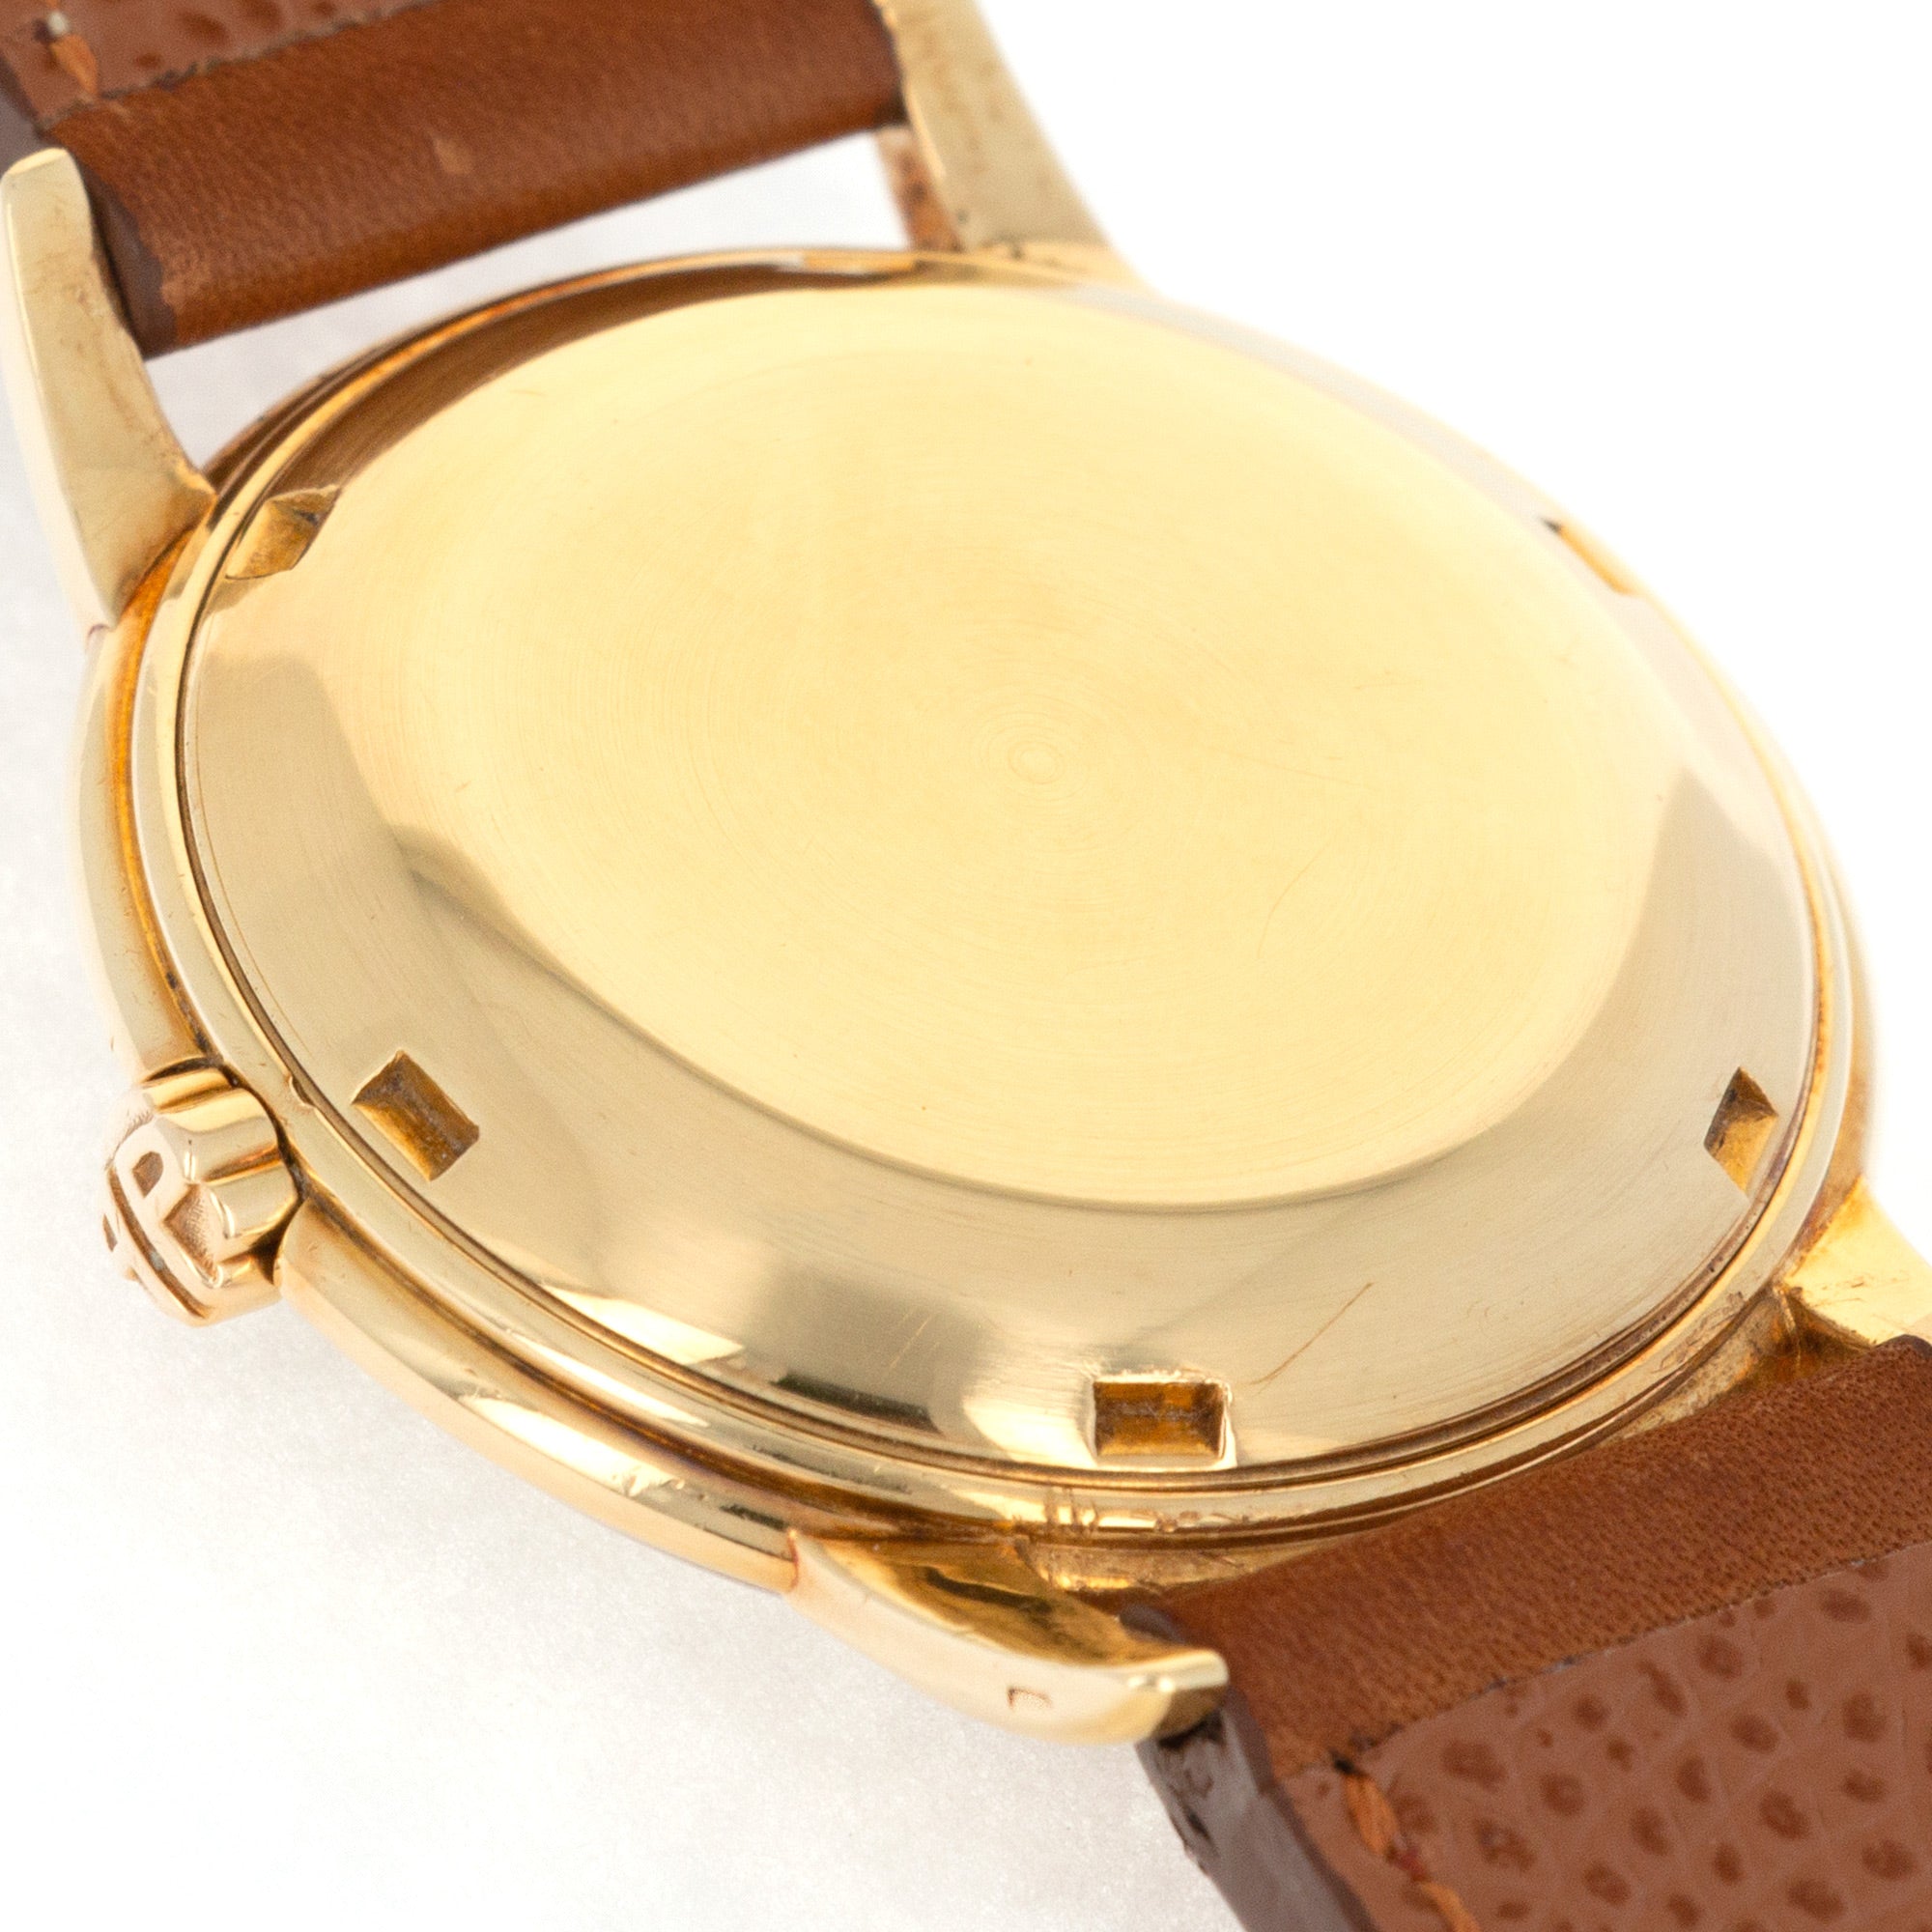 Patek Philippe - Patek Philippe Yellow Gold Calatrava Watch Ref. 2551 - The Keystone Watches